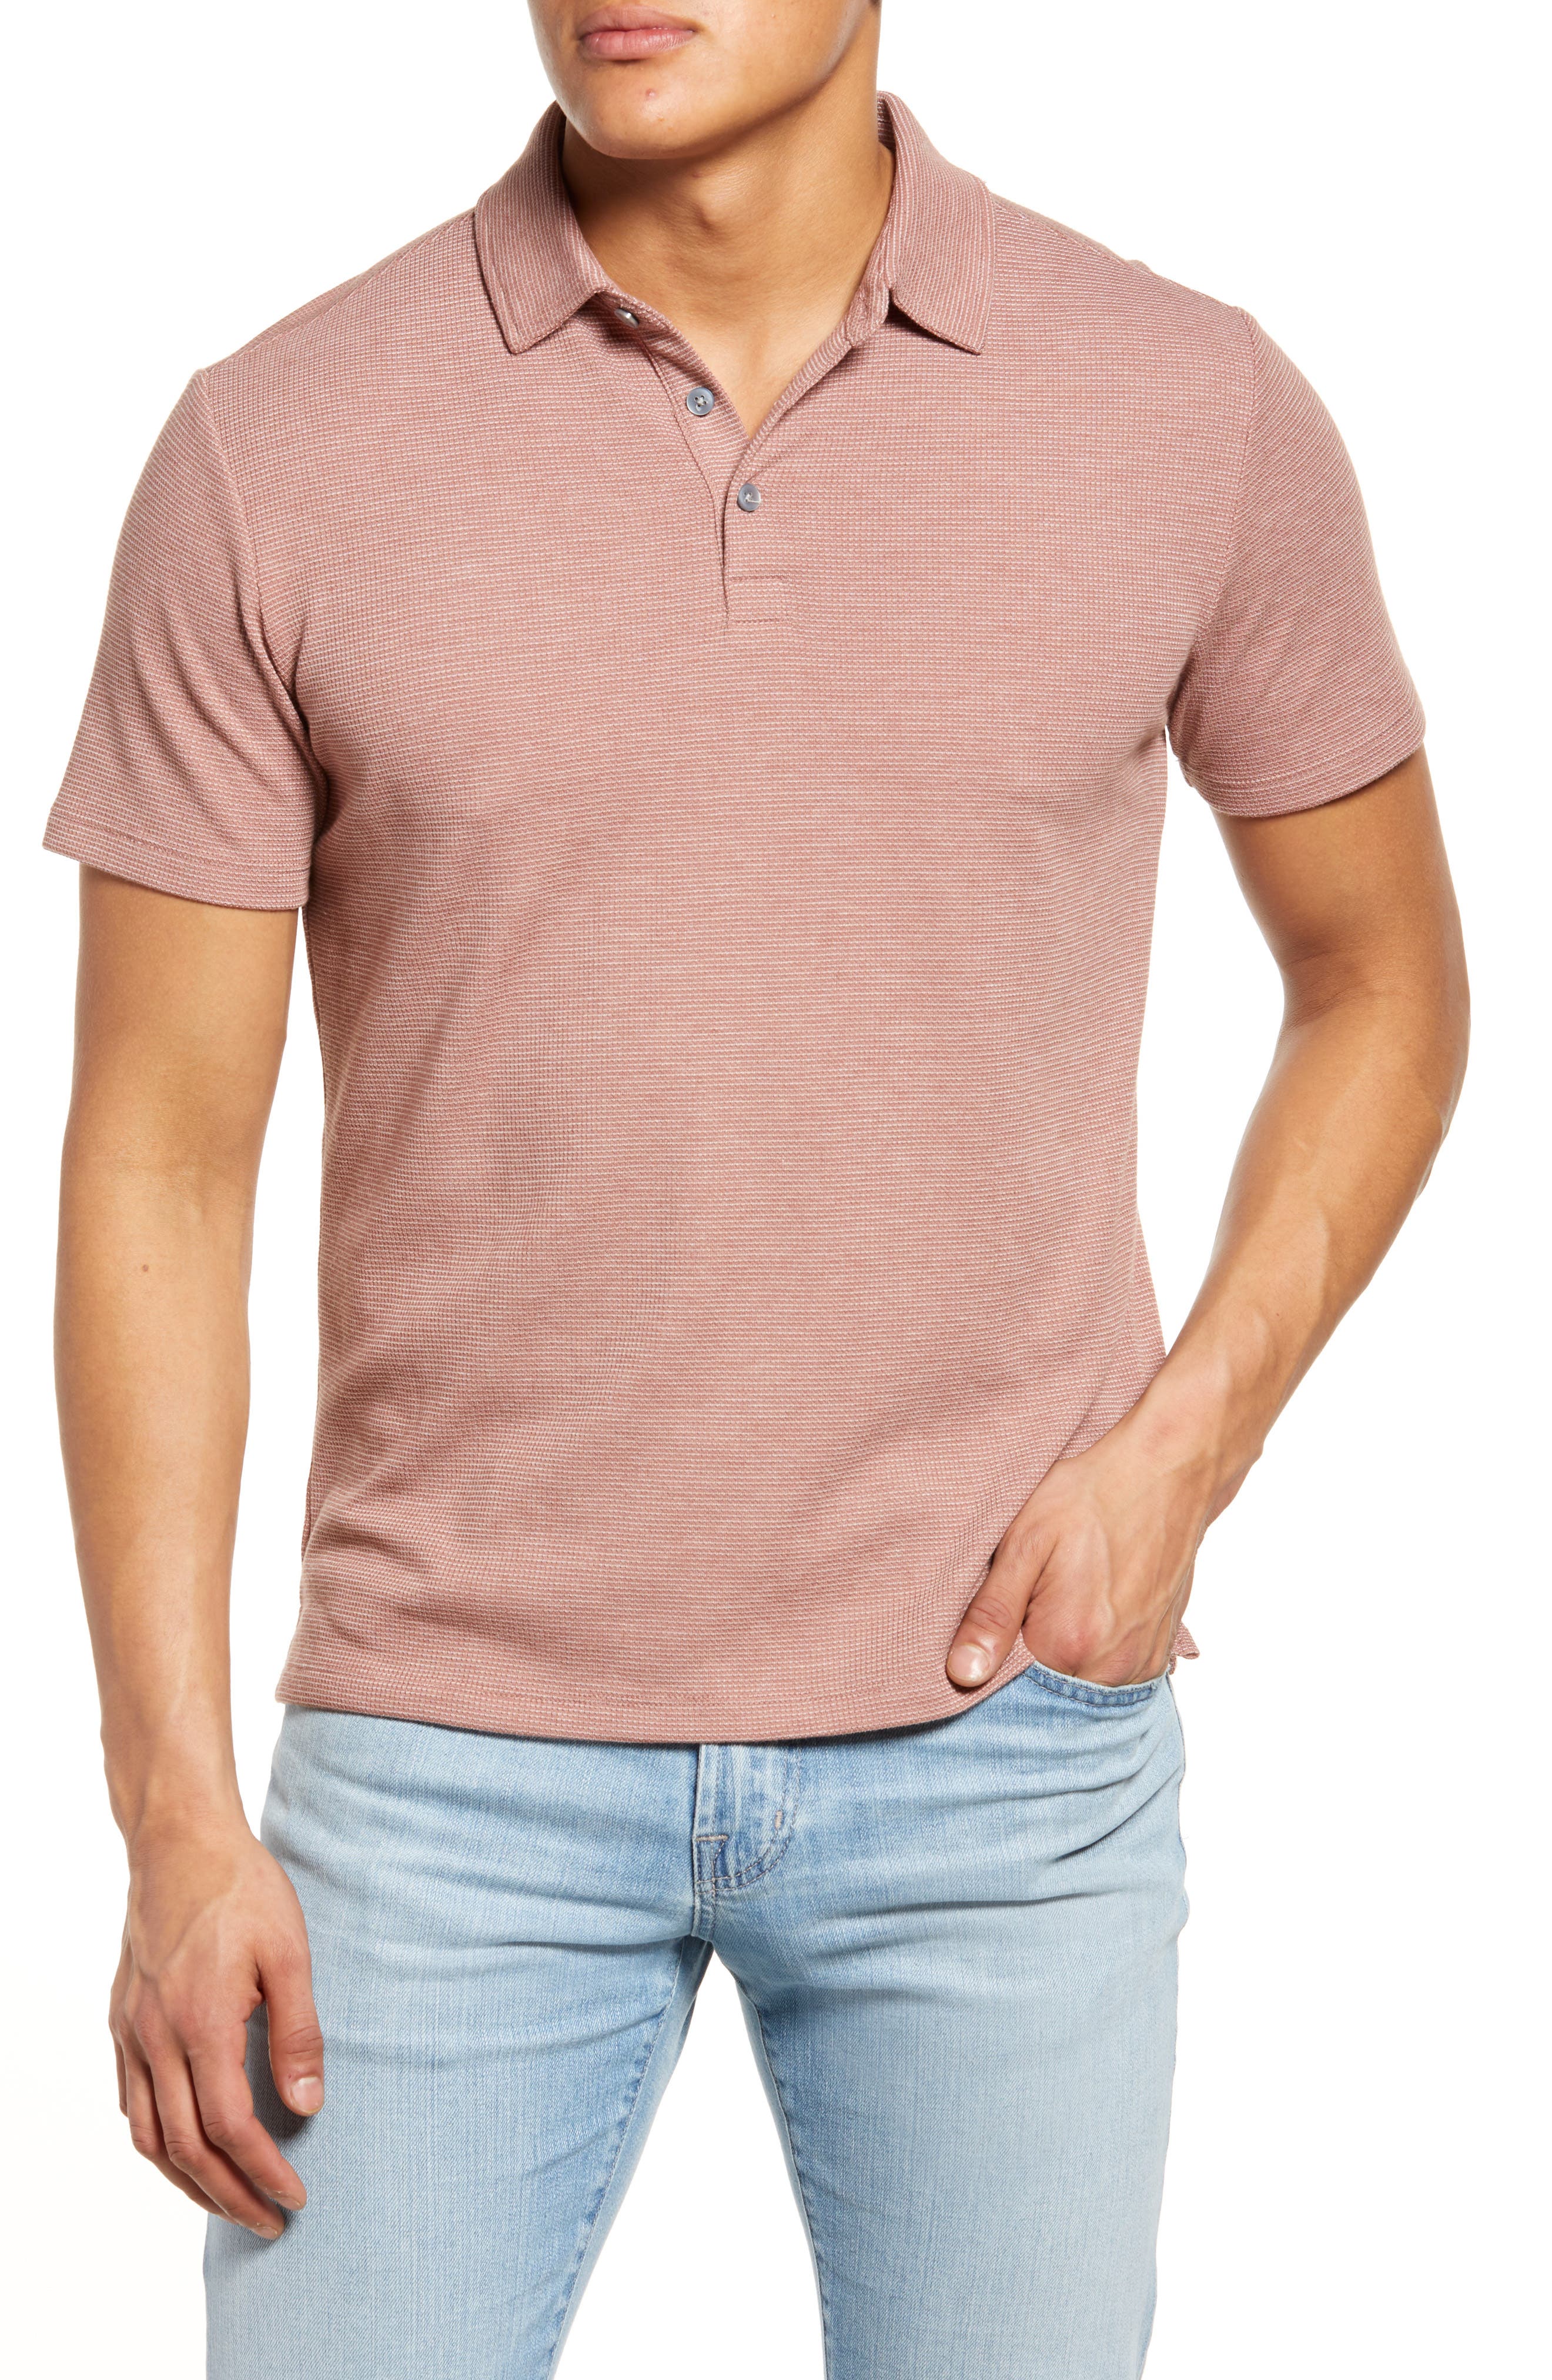 Pink M Ralph Lauren Shirt discount 70% WOMEN FASHION Shirts & T-shirts Shirt Casual 